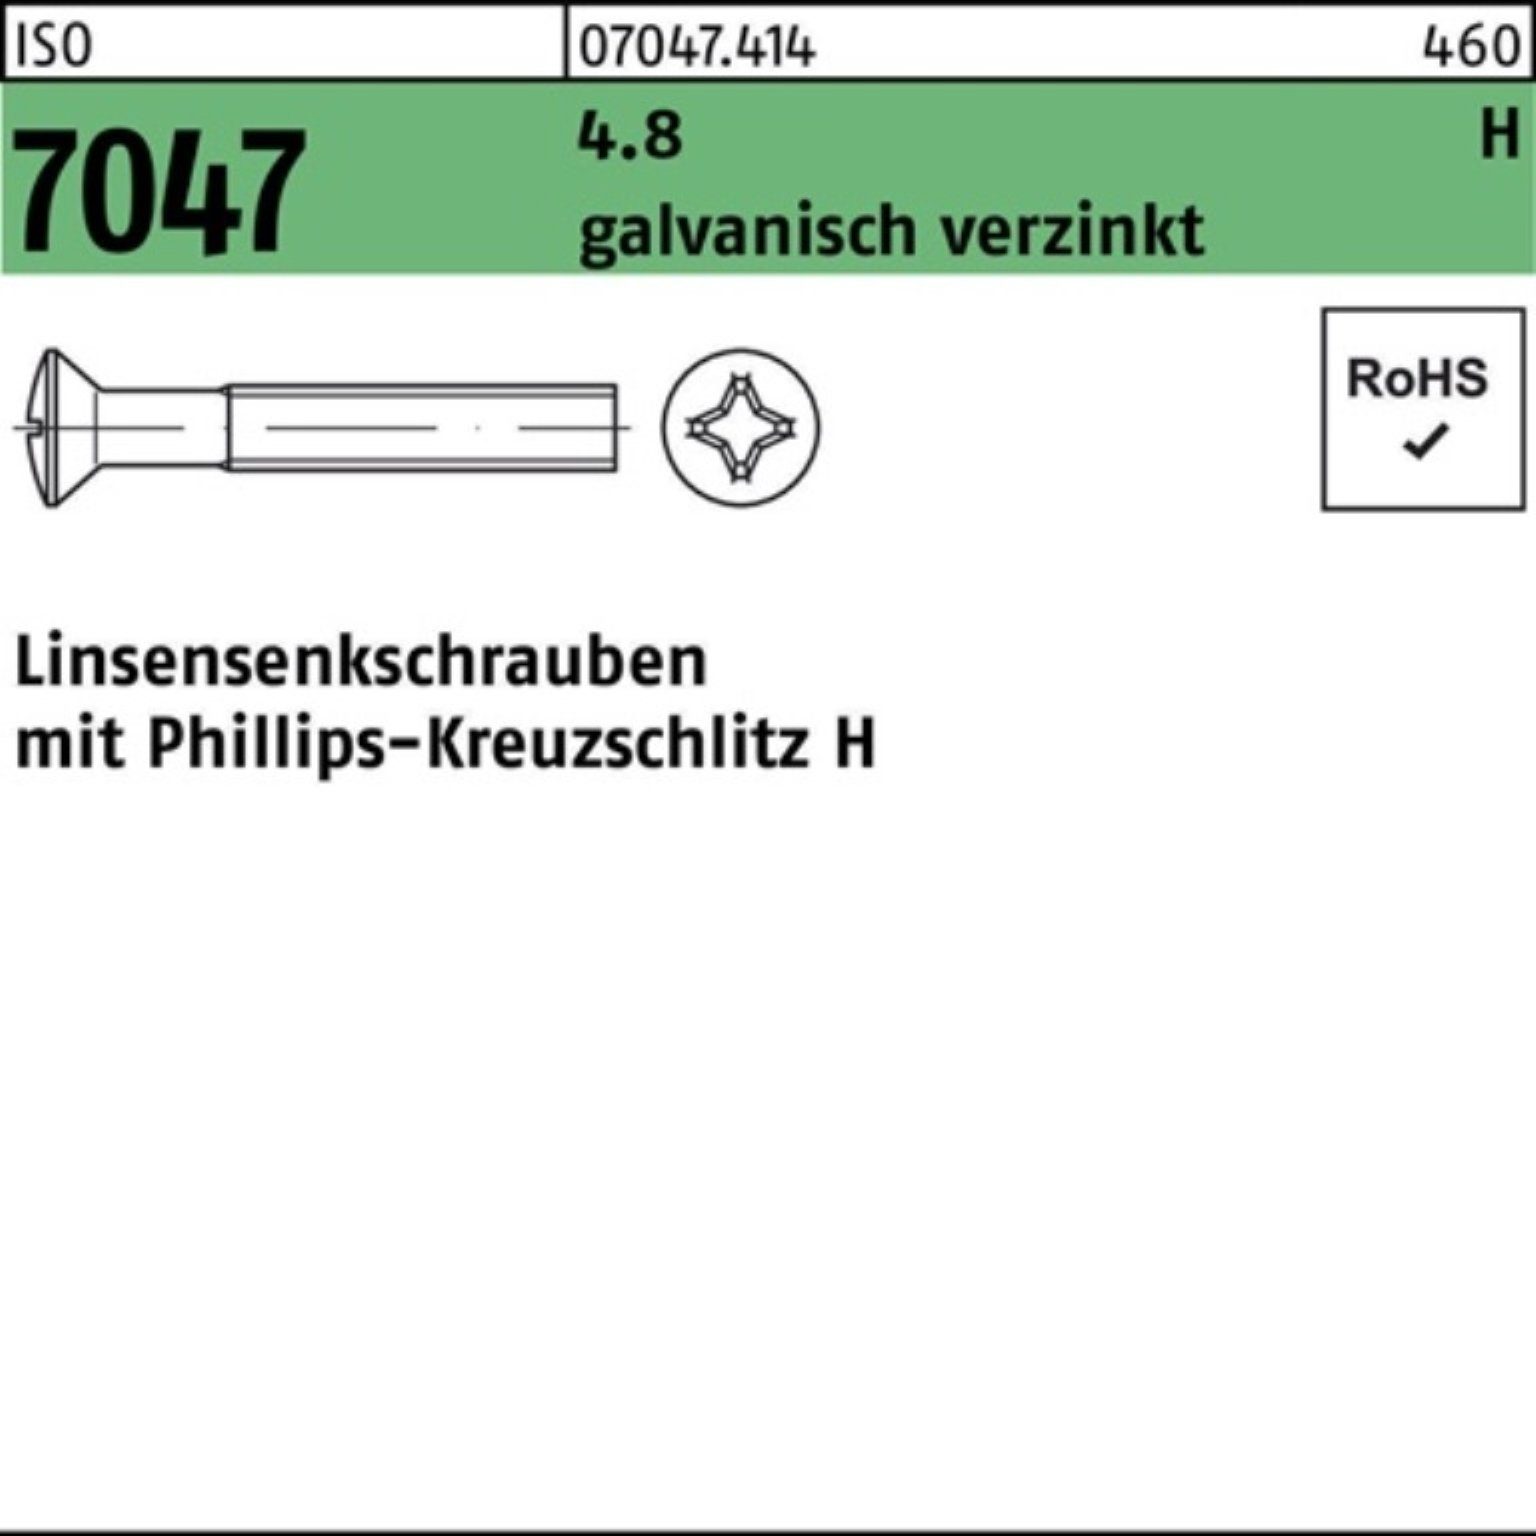 M5x12-H Reyher galv.verz. PH Pack 7047 ISO 200er Linsenschraube Linsensenkschraube 4.8 200St